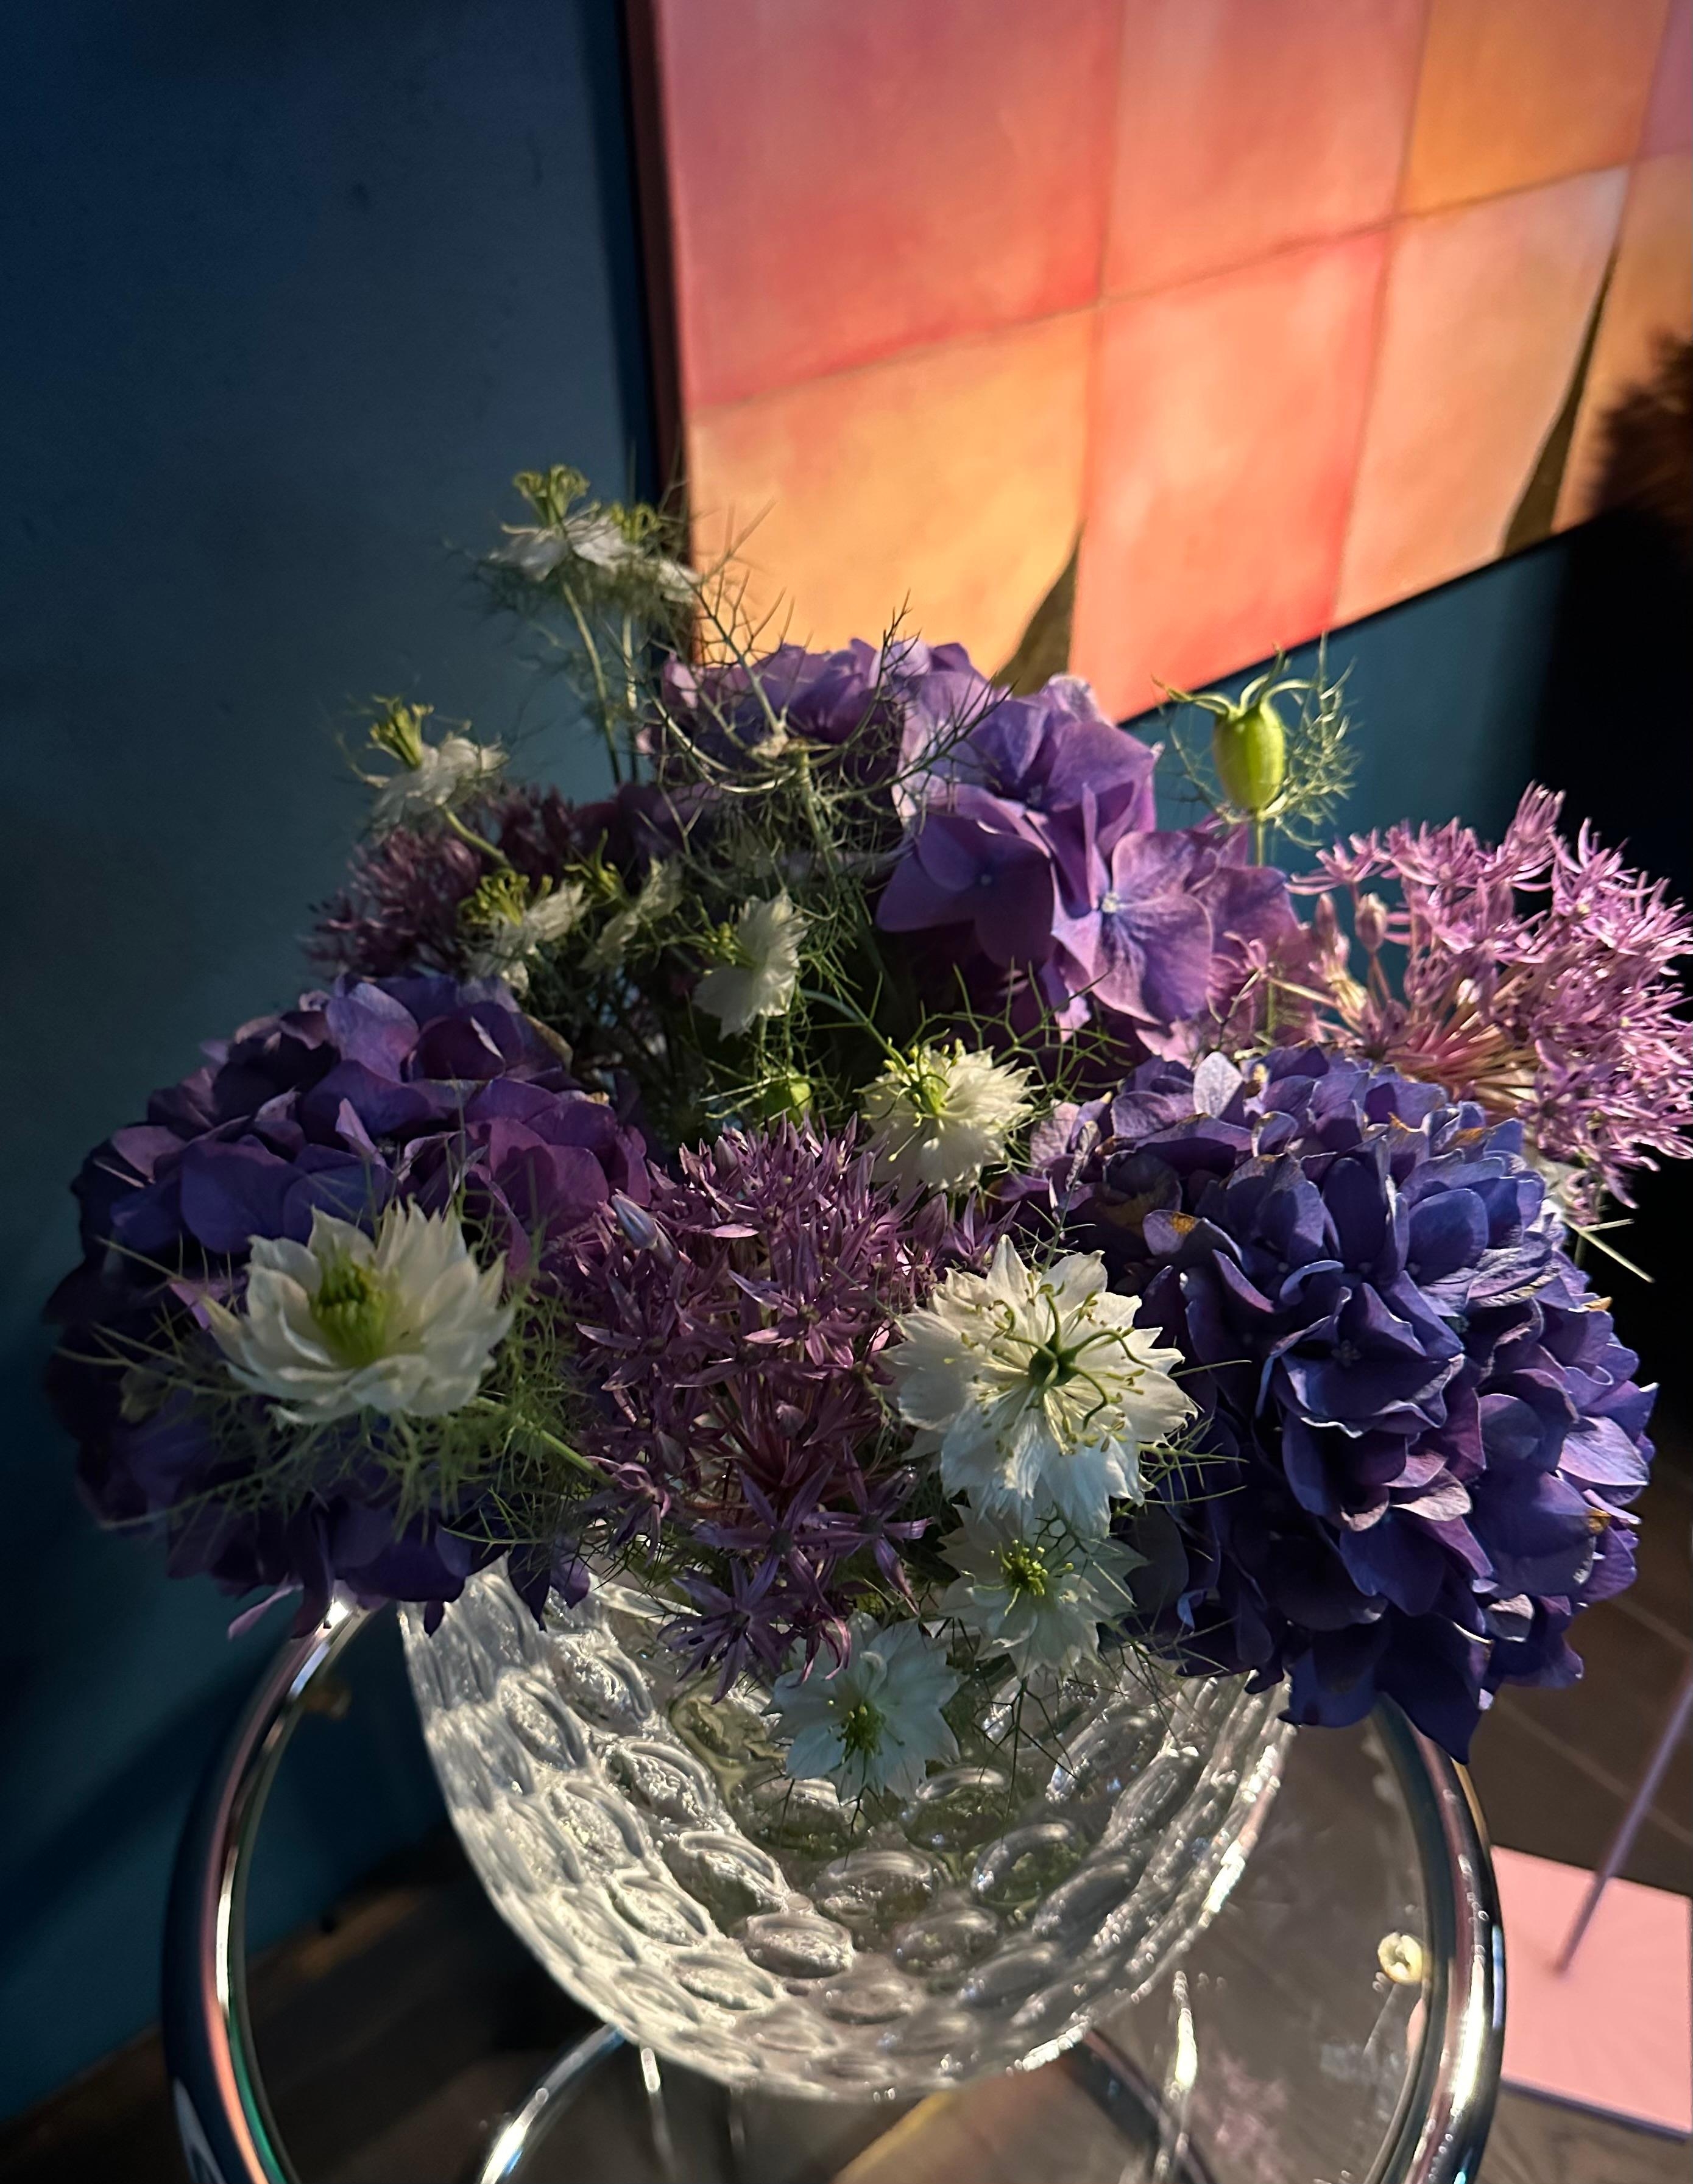 Bei dem trüben Wetter muss man sich mit Blumen im Haus belohnen.
#Blumen #Couchstyle